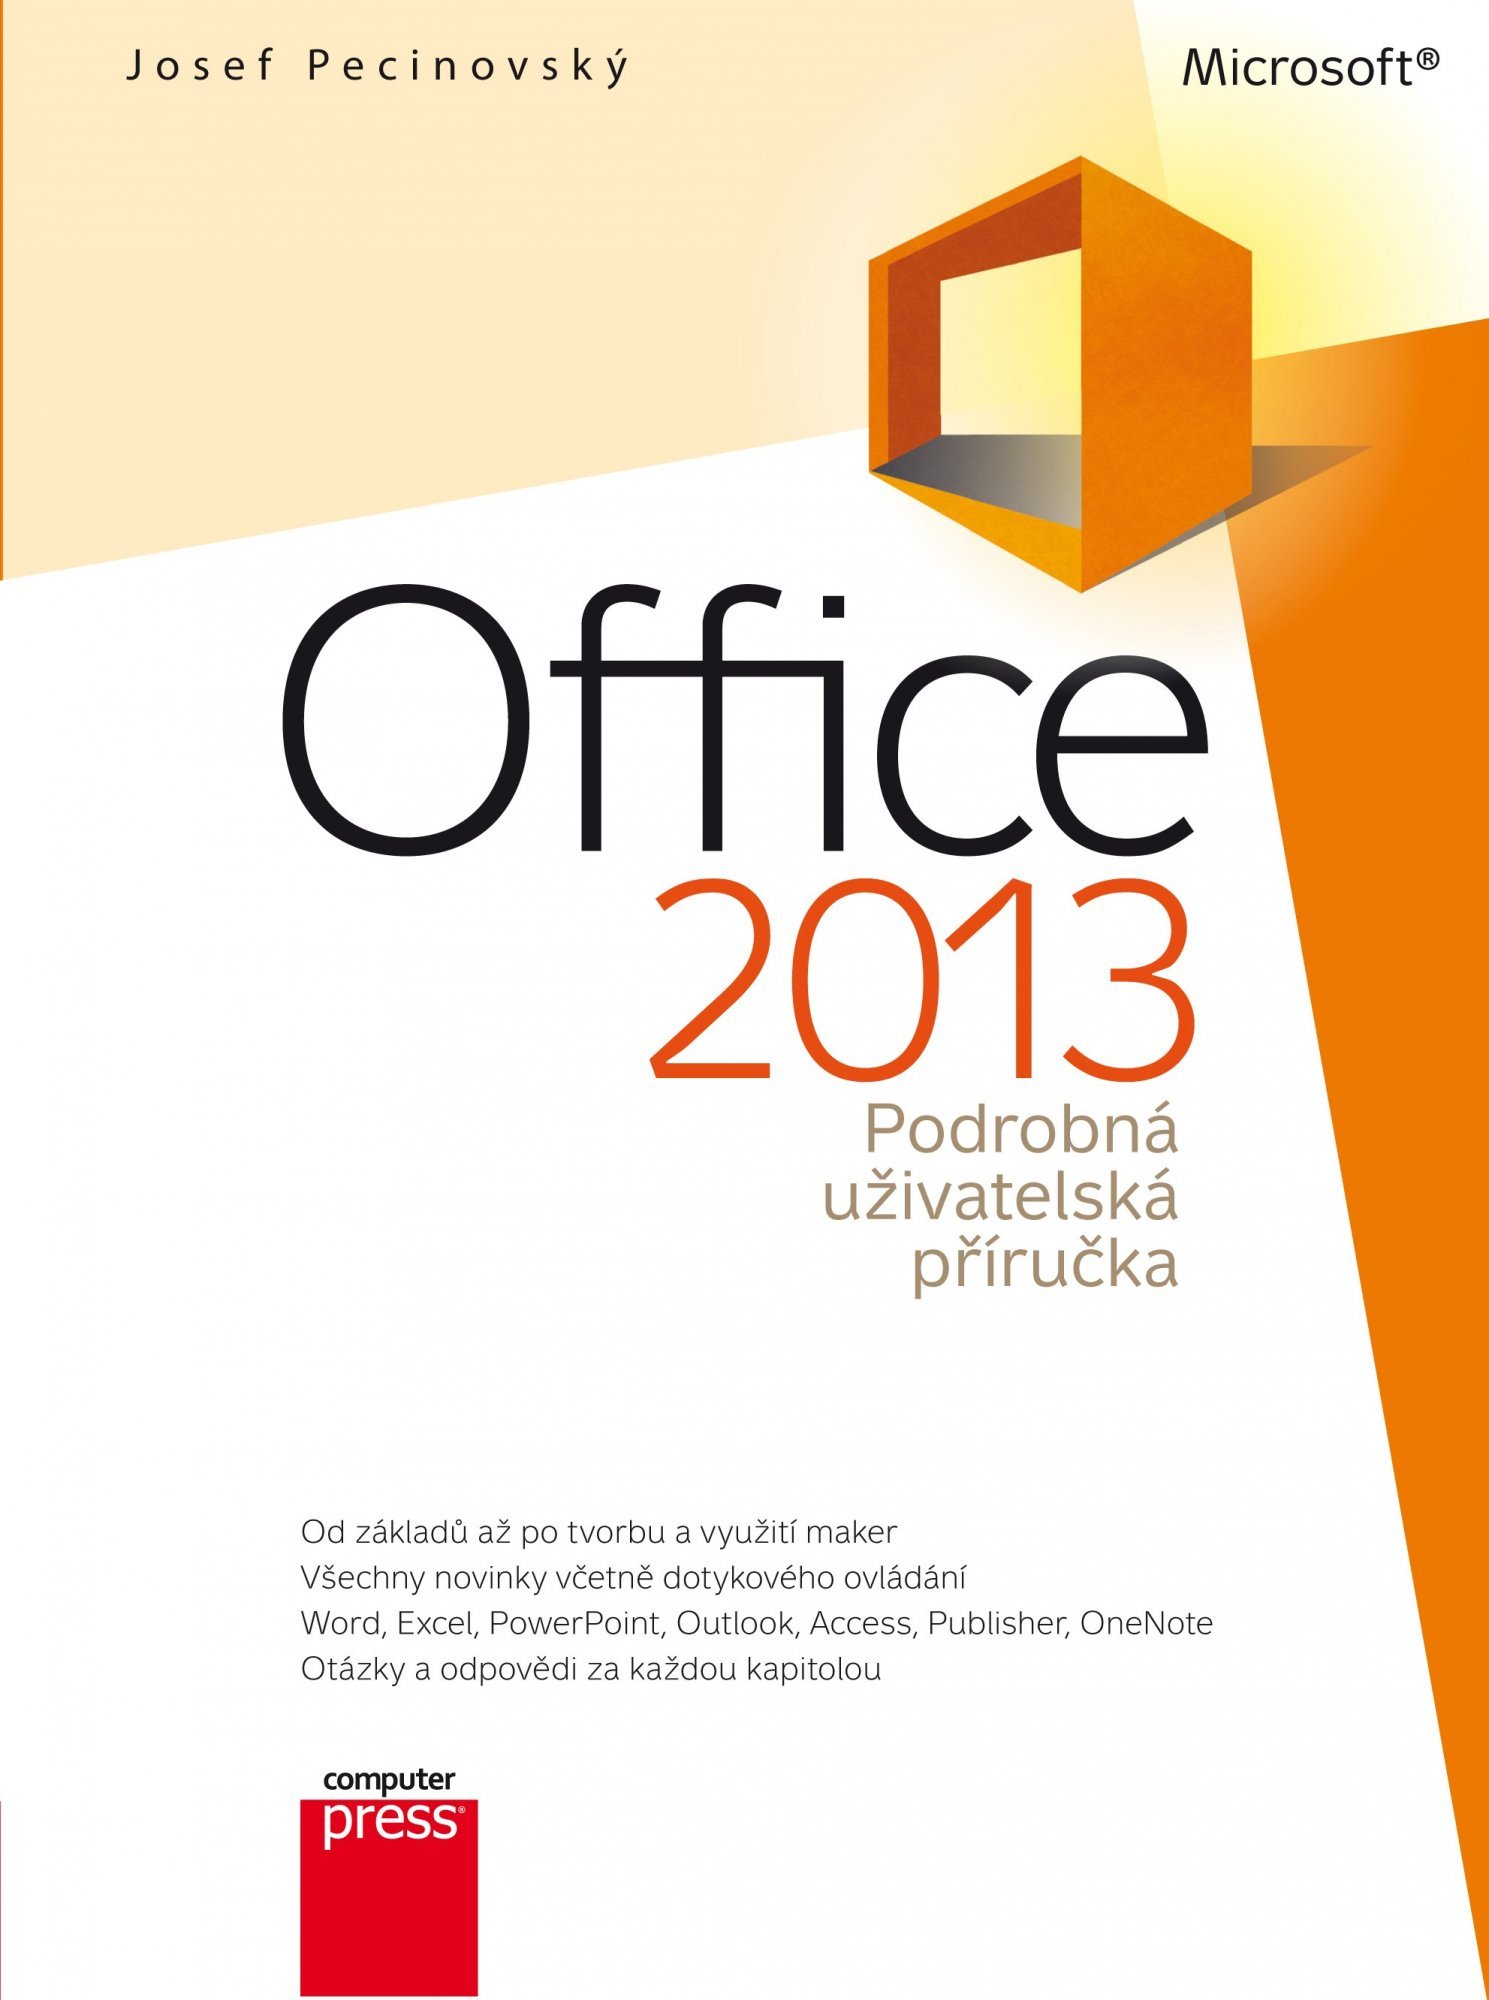 Microsoft Office 2013 - Podrobná uživatelská příručka - Josef Pecinovský